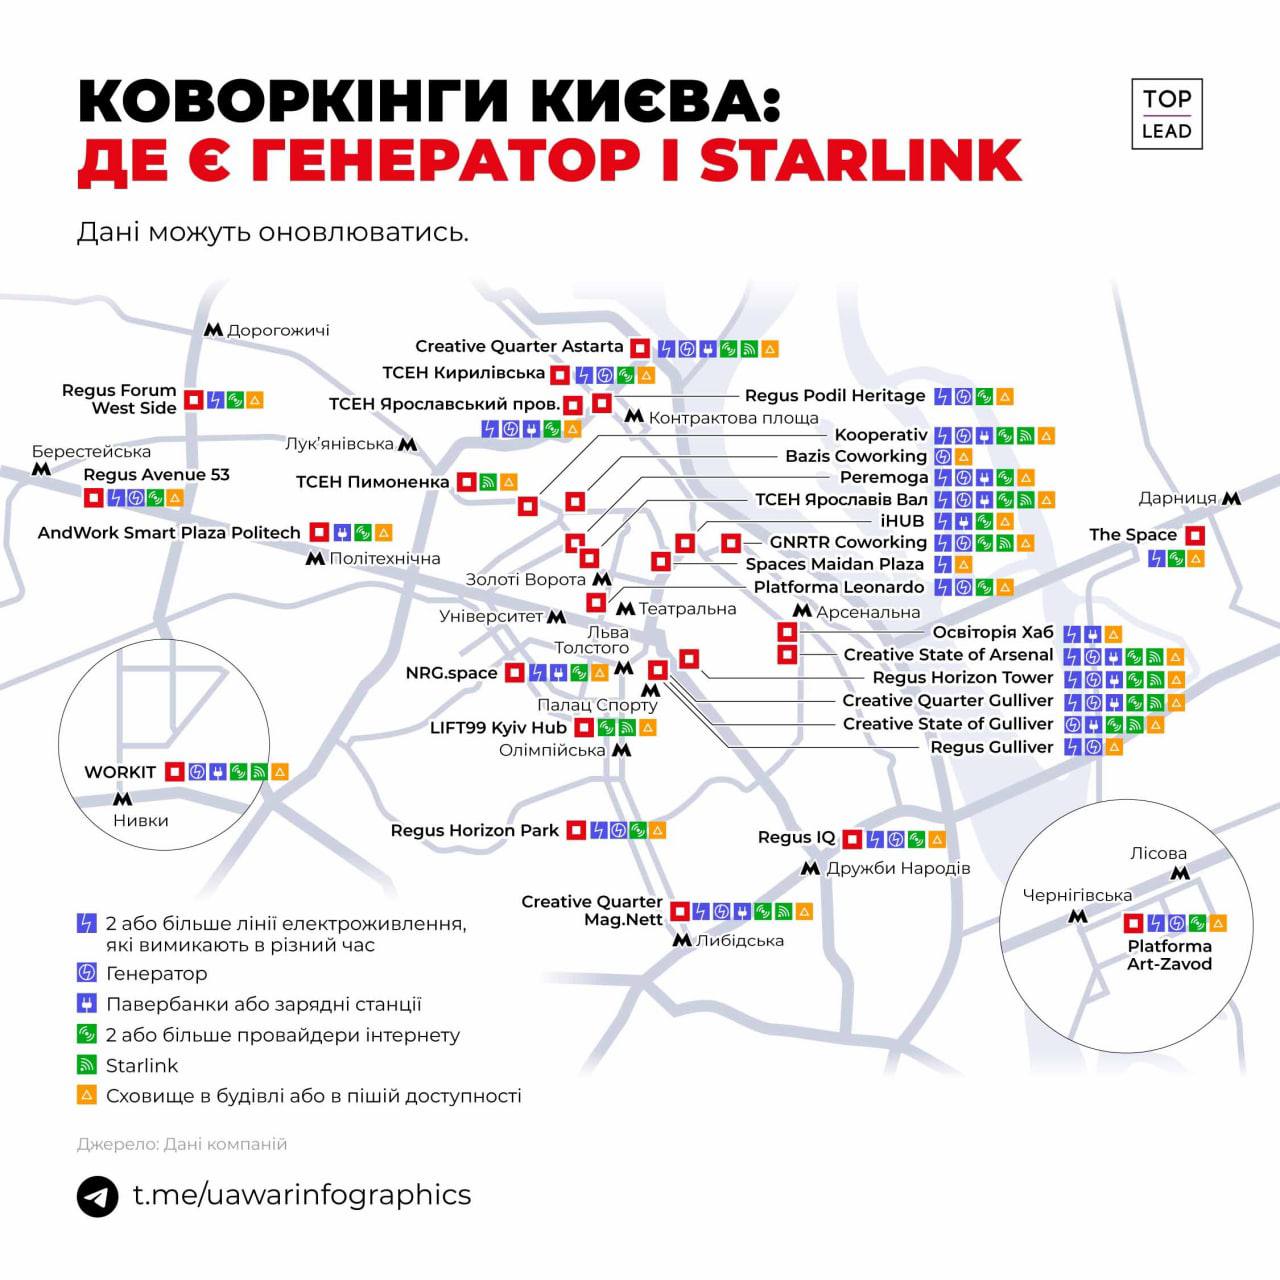 Карта коворкингов Киева